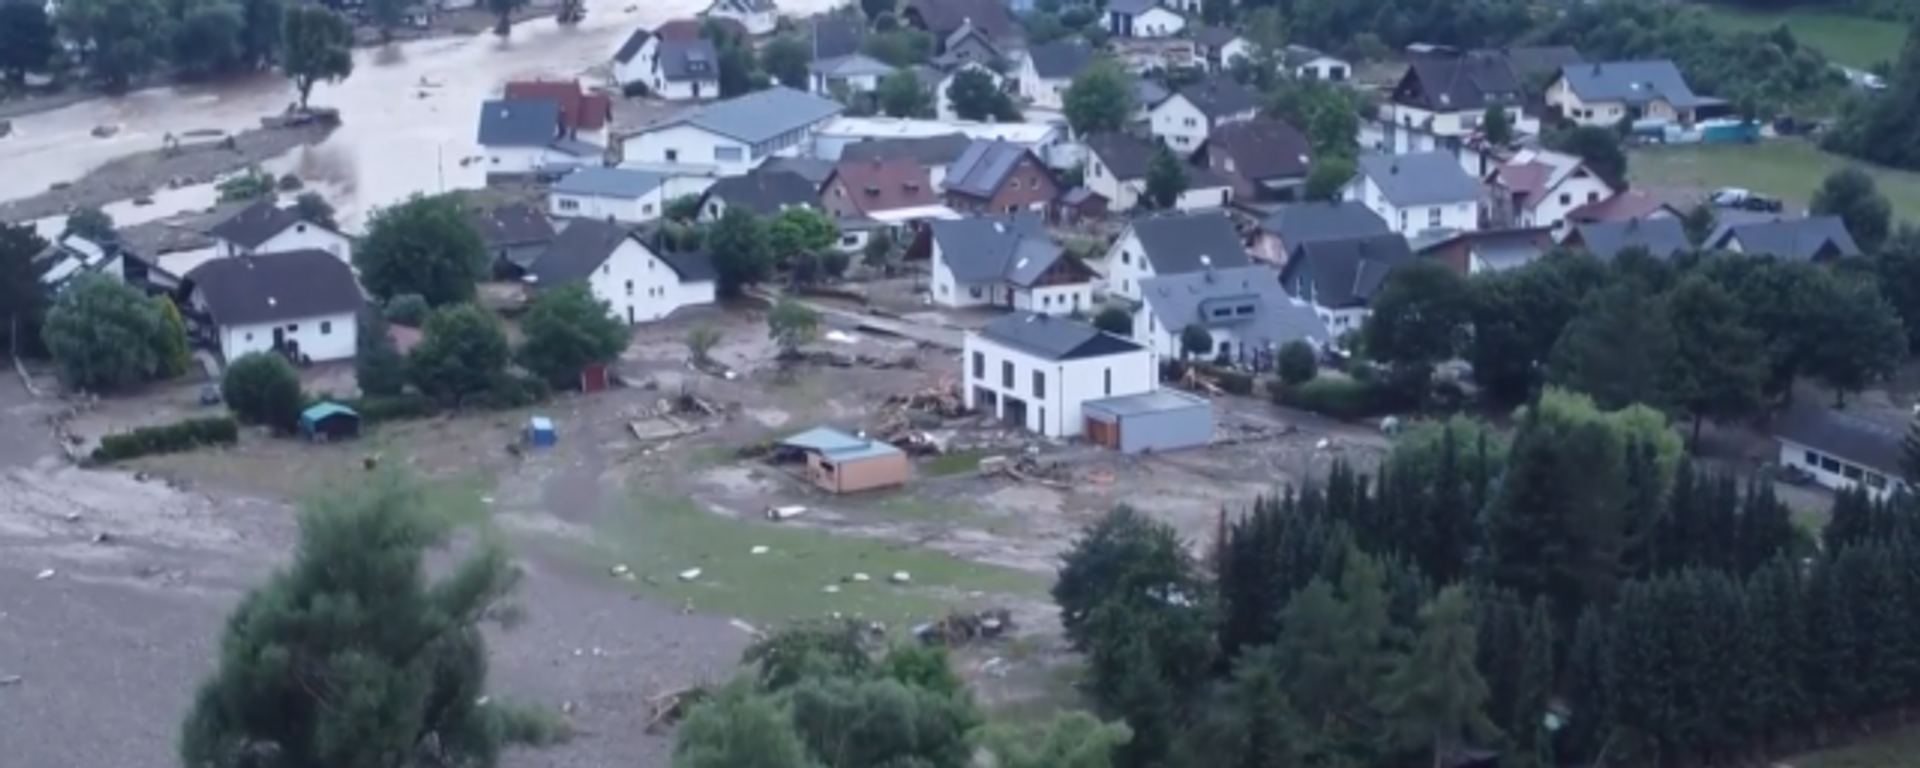 Katastrofalne poplave na zapadu Nemačke snimljene iz drona - Sputnik Srbija, 1920, 16.07.2021